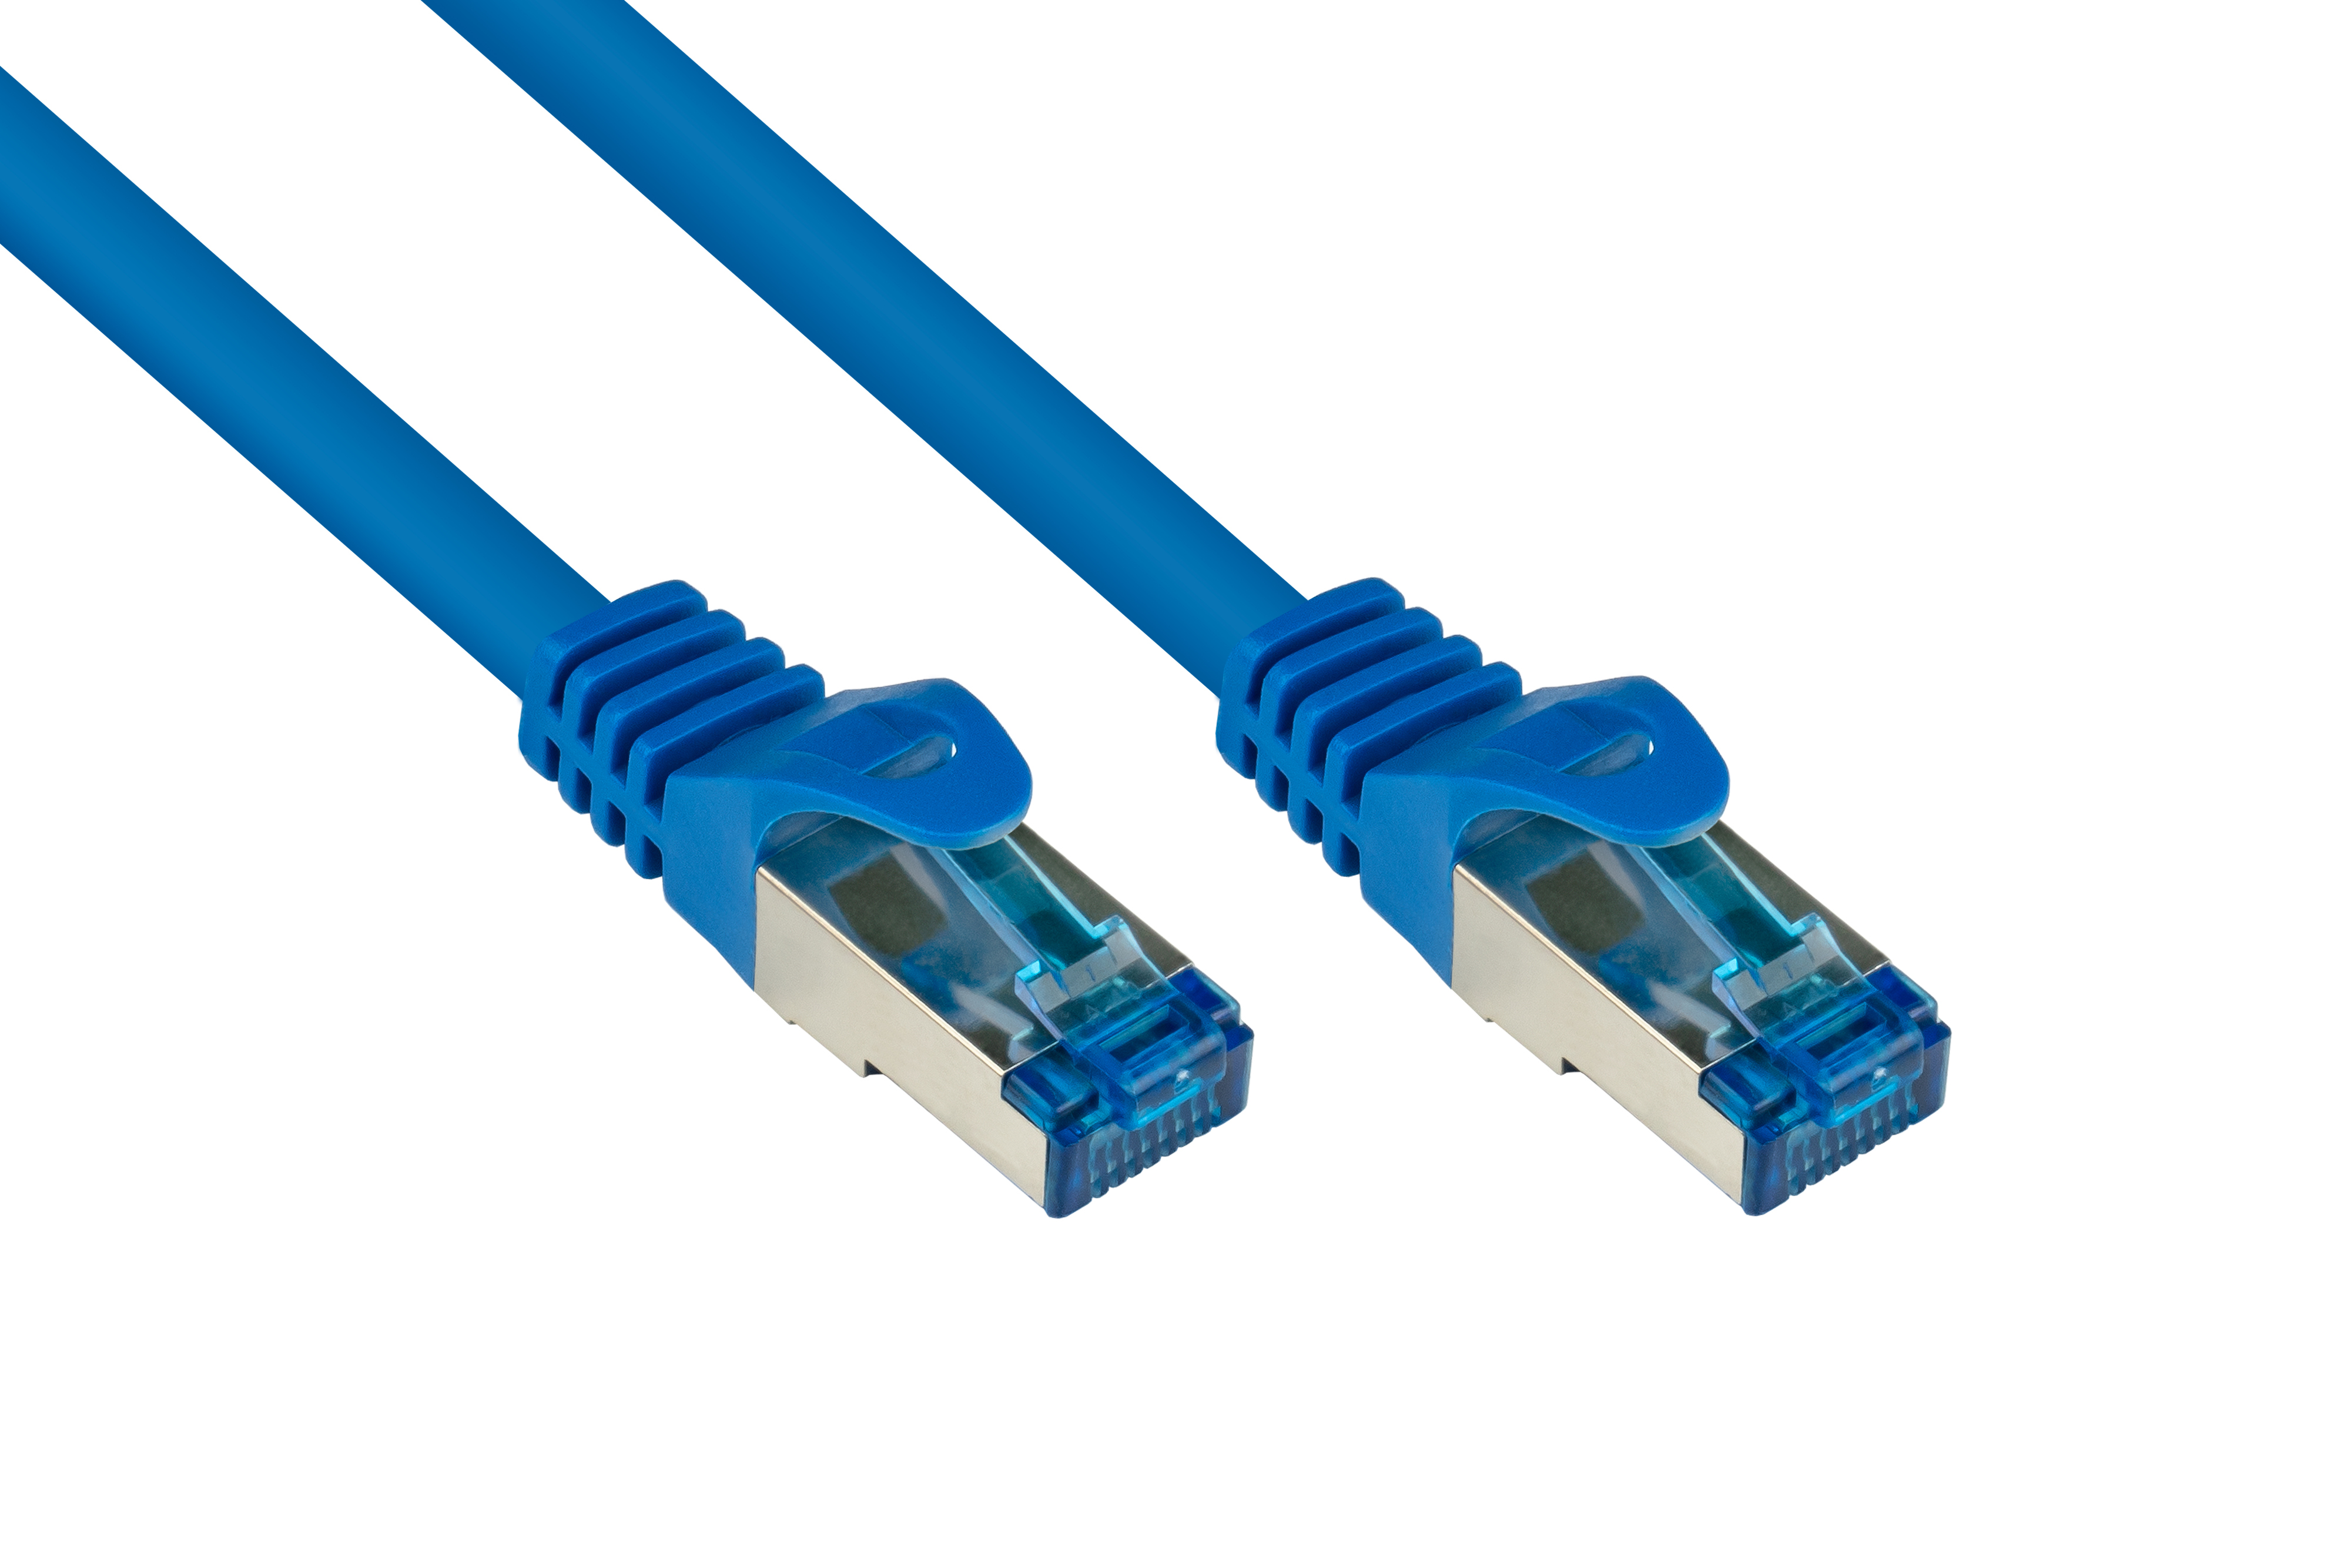 40 PiMF, S/FTP, 500MHz, halogenfrei, CONNECTIONS m GOOD blau, Netzwerkkabel,